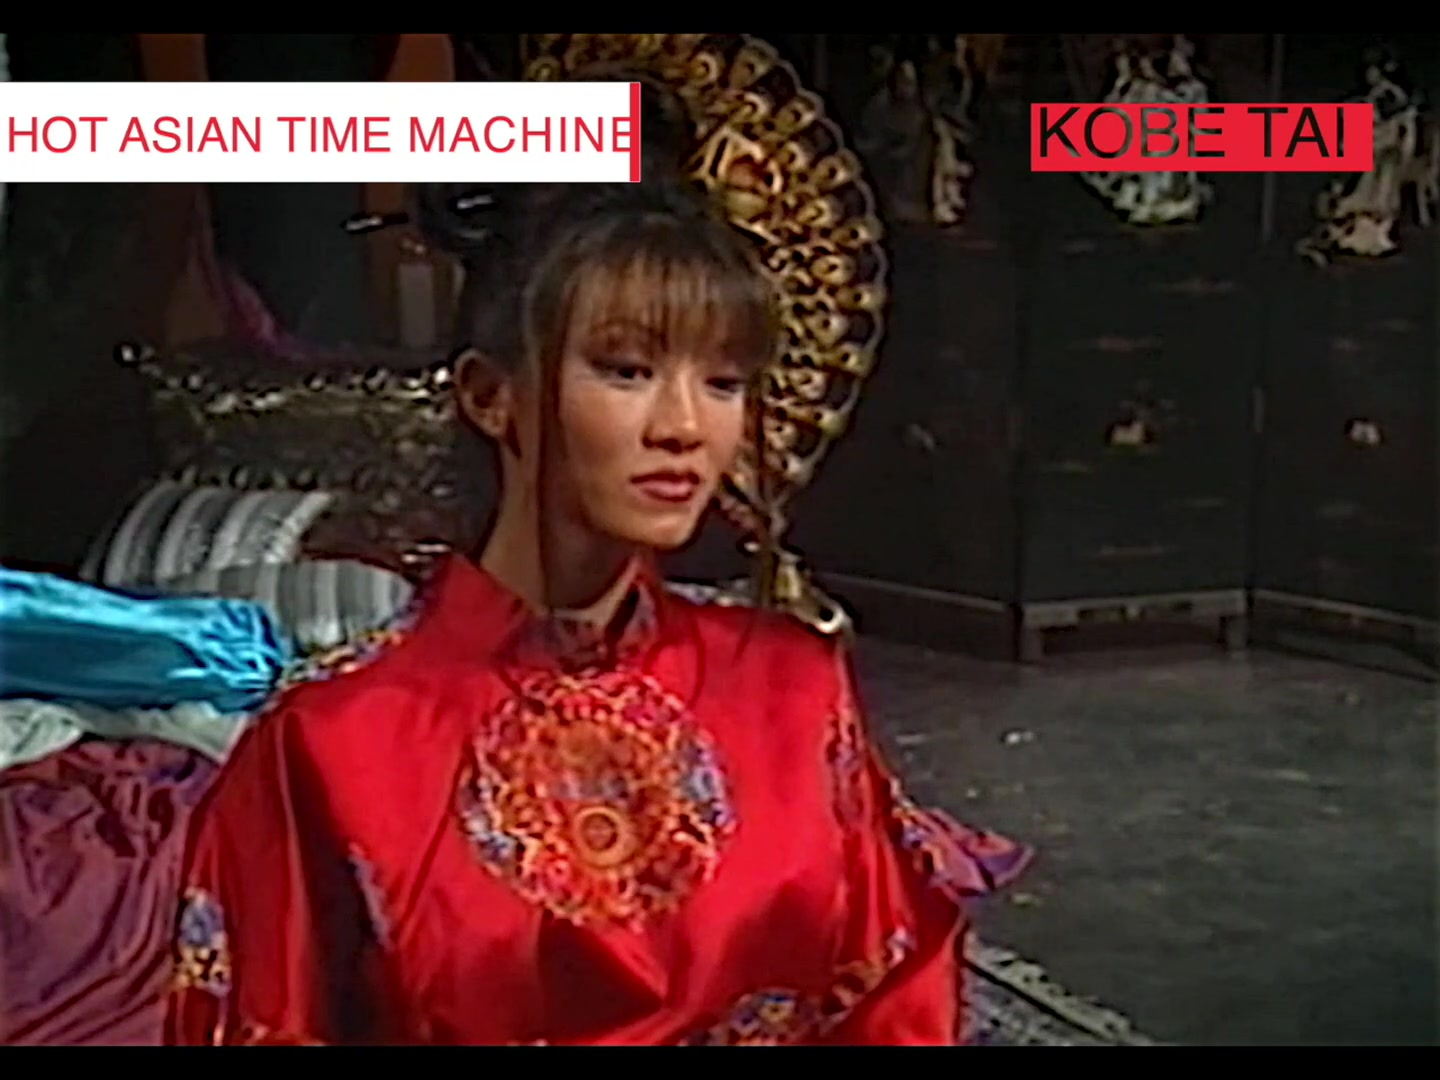 Hot Asian Time Machine - A Supercut Vol 1